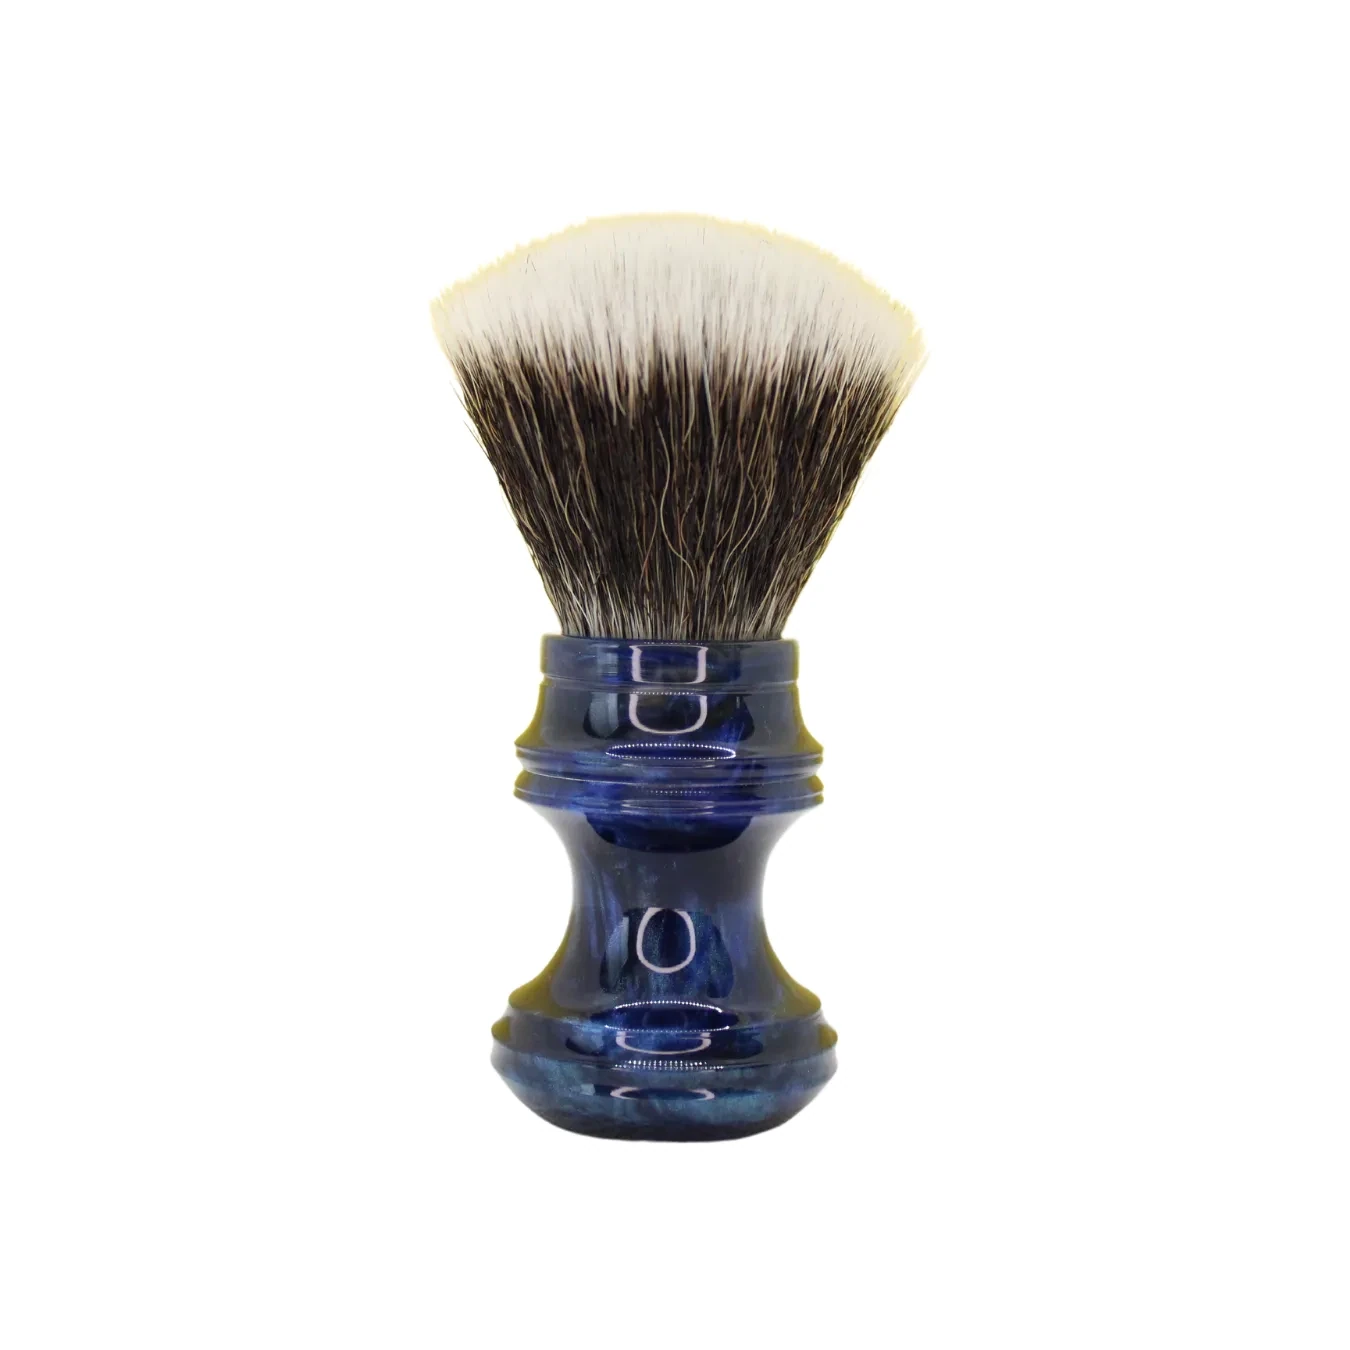 Nameless Workx Hue Artisan Hand-Turned Shaving Brush - Premium Synthetic G5C Fan Knot